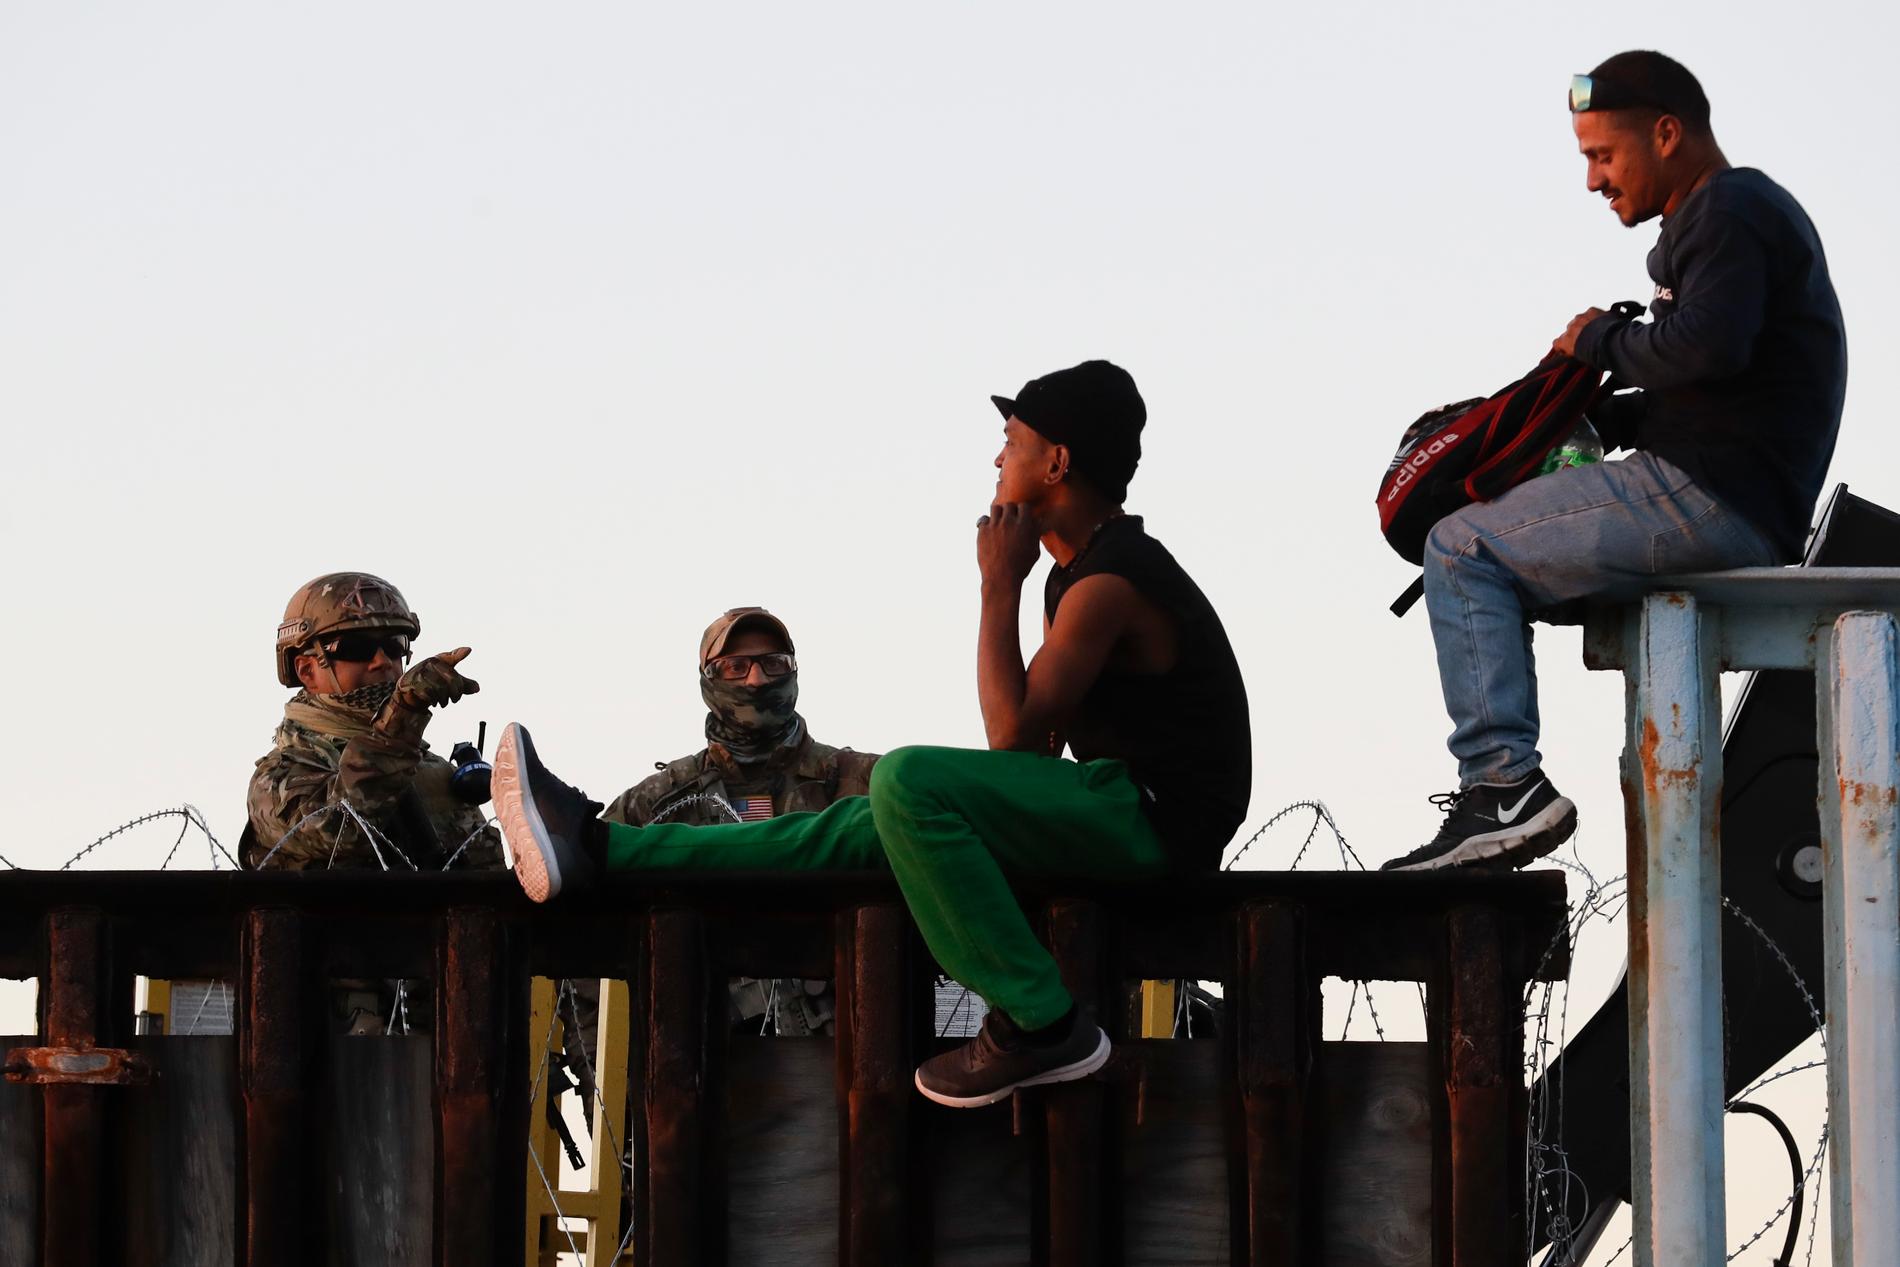 Amerikanska gränspoliser i samspråk med två migranter som sitter uppe på gränsstaketet, på andra sidan taggtråden.